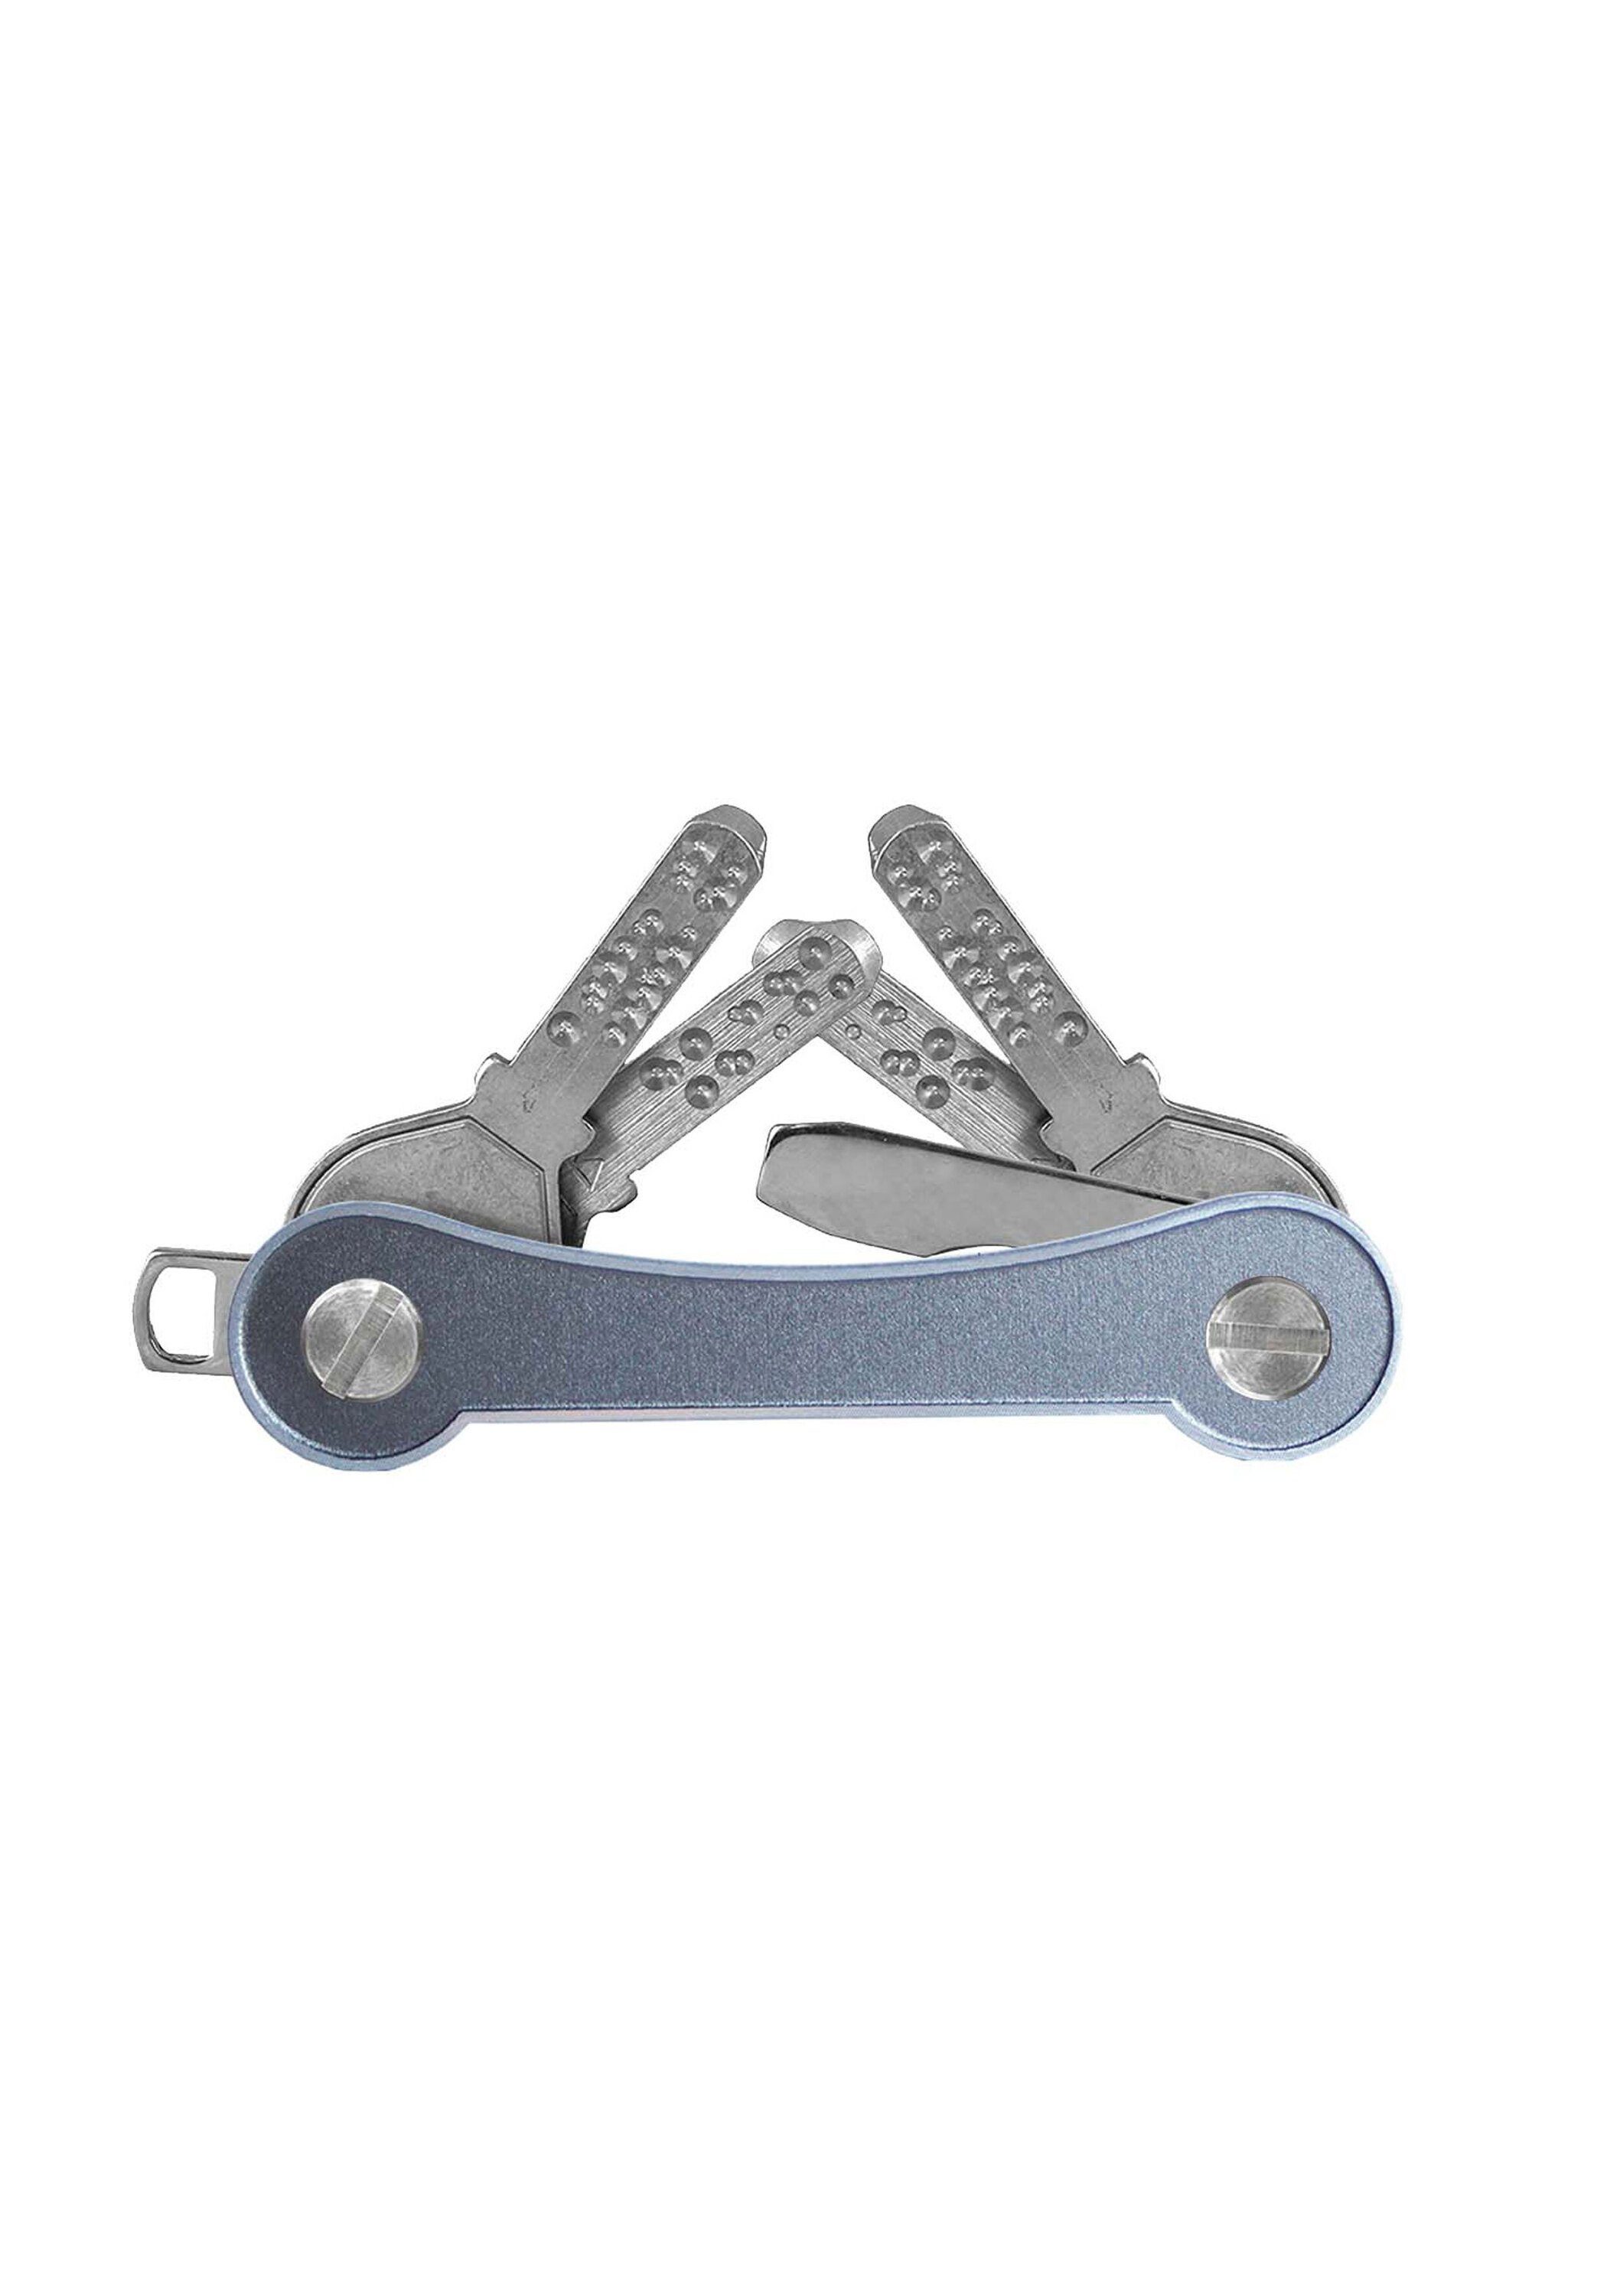 keycabins Schlüsselanhänger Aluminium frame, SWISS grau Made